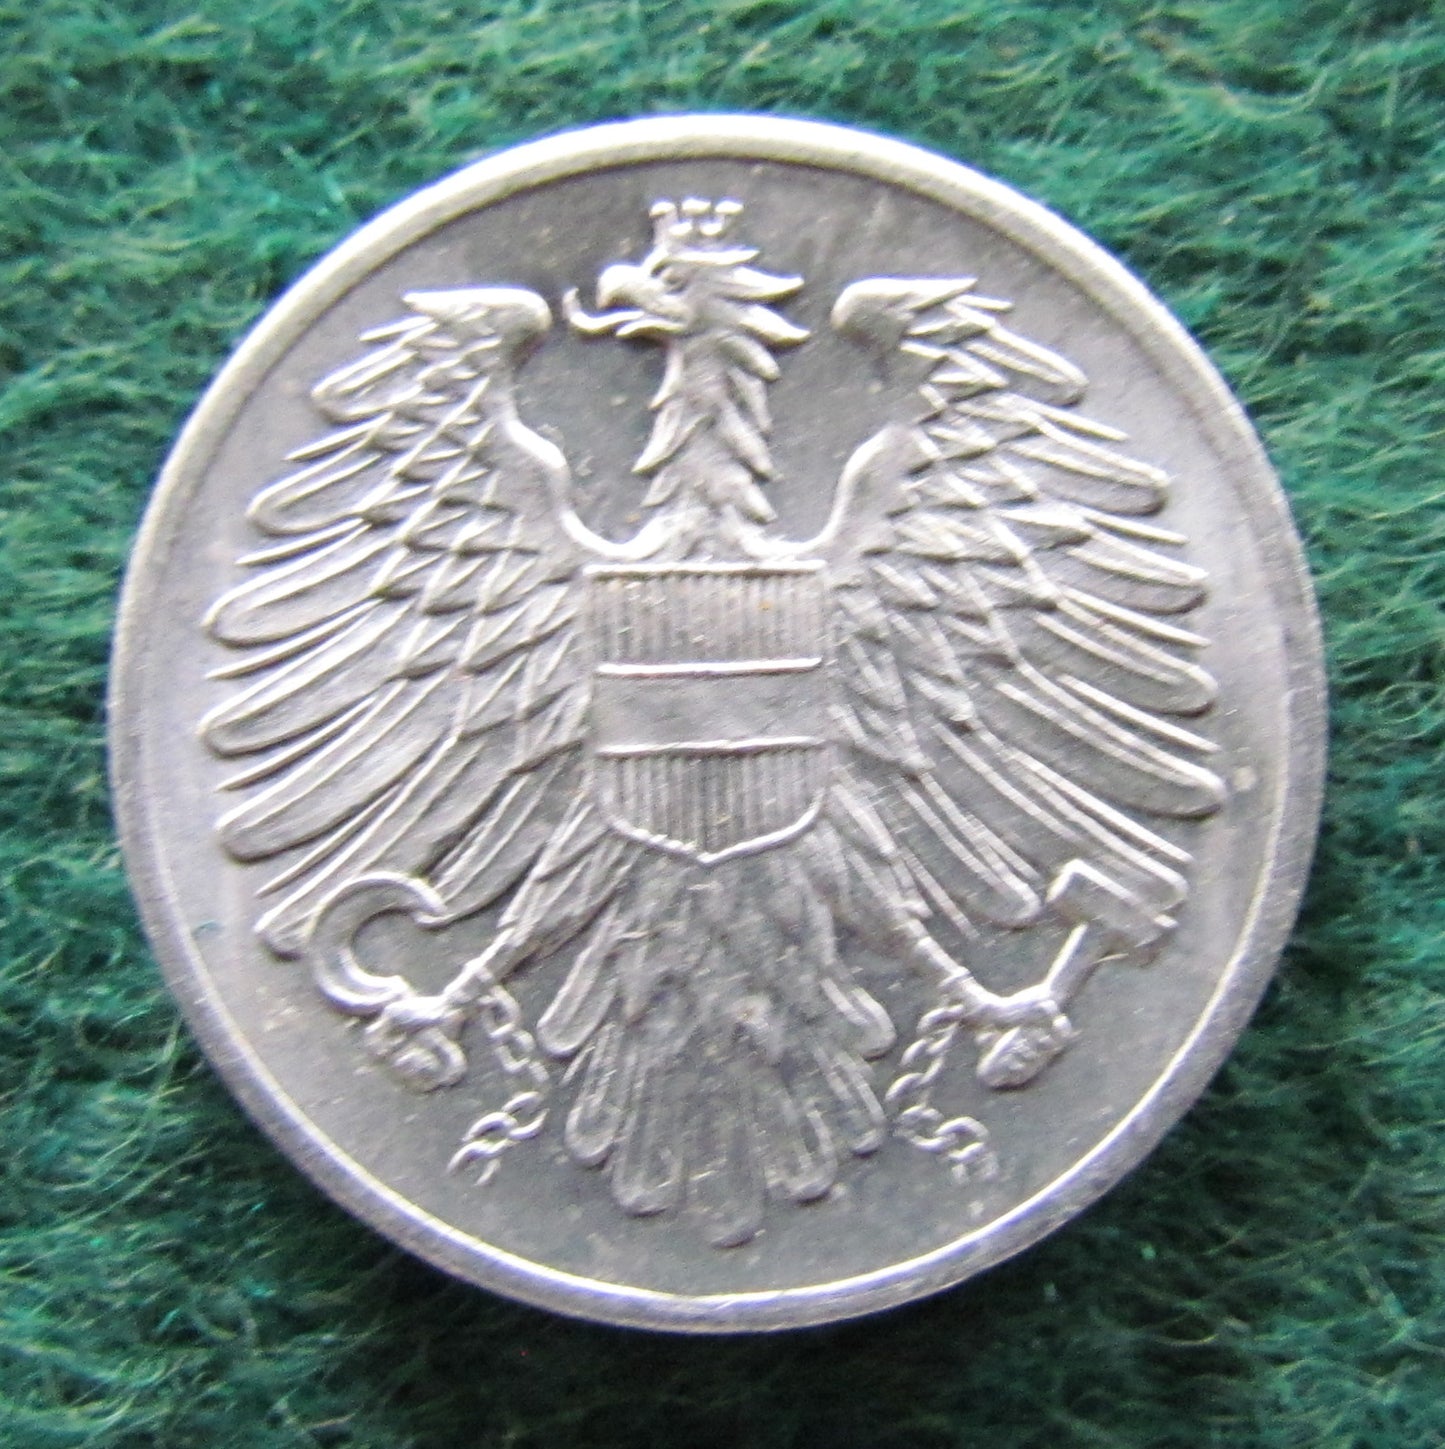 Austria 1962 2 Groschen Coin